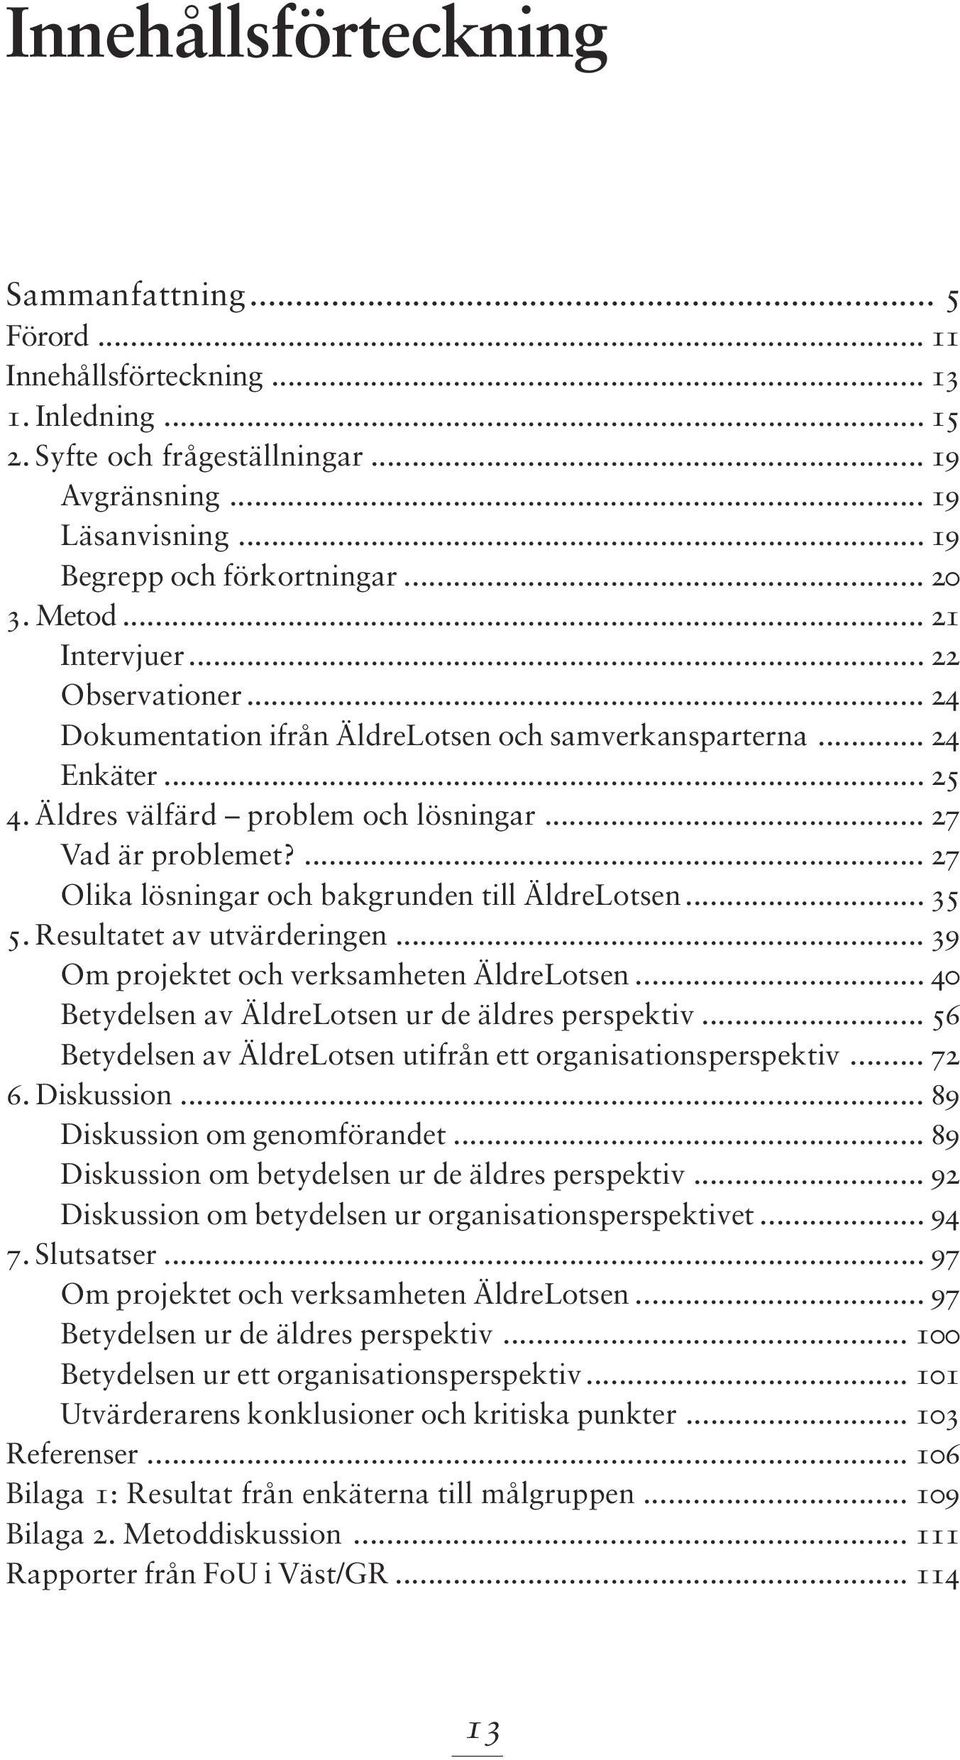 ... 27 Olika lösningar och bakgrunden till ÄldreLotsen... 35 5. Resultatet av utvärderingen... 39 Om projektet och verksamheten ÄldreLotsen... 40 Betydelsen av ÄldreLotsen ur de äldres perspektiv.